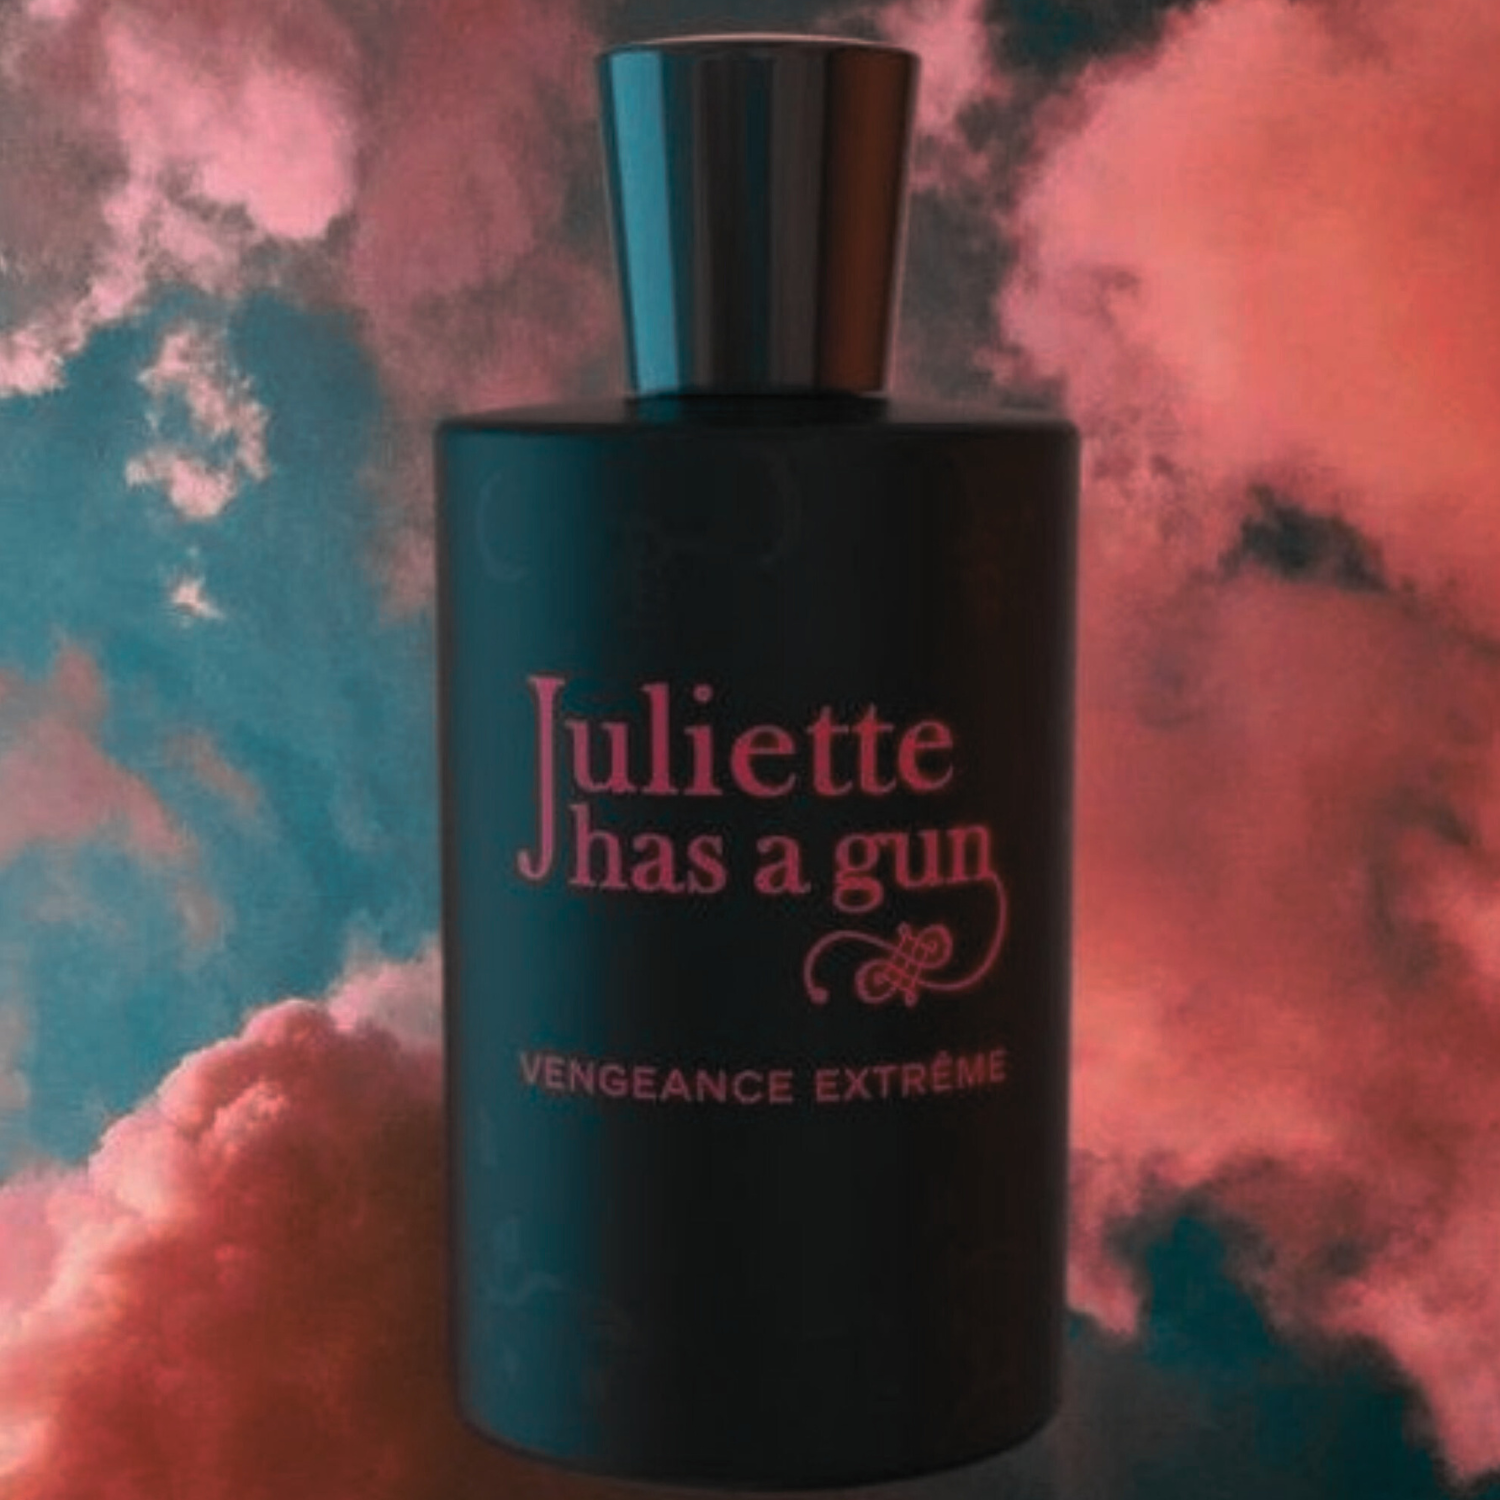 Juliette Has A Gun Lady Vengeance Eau de Parfum  